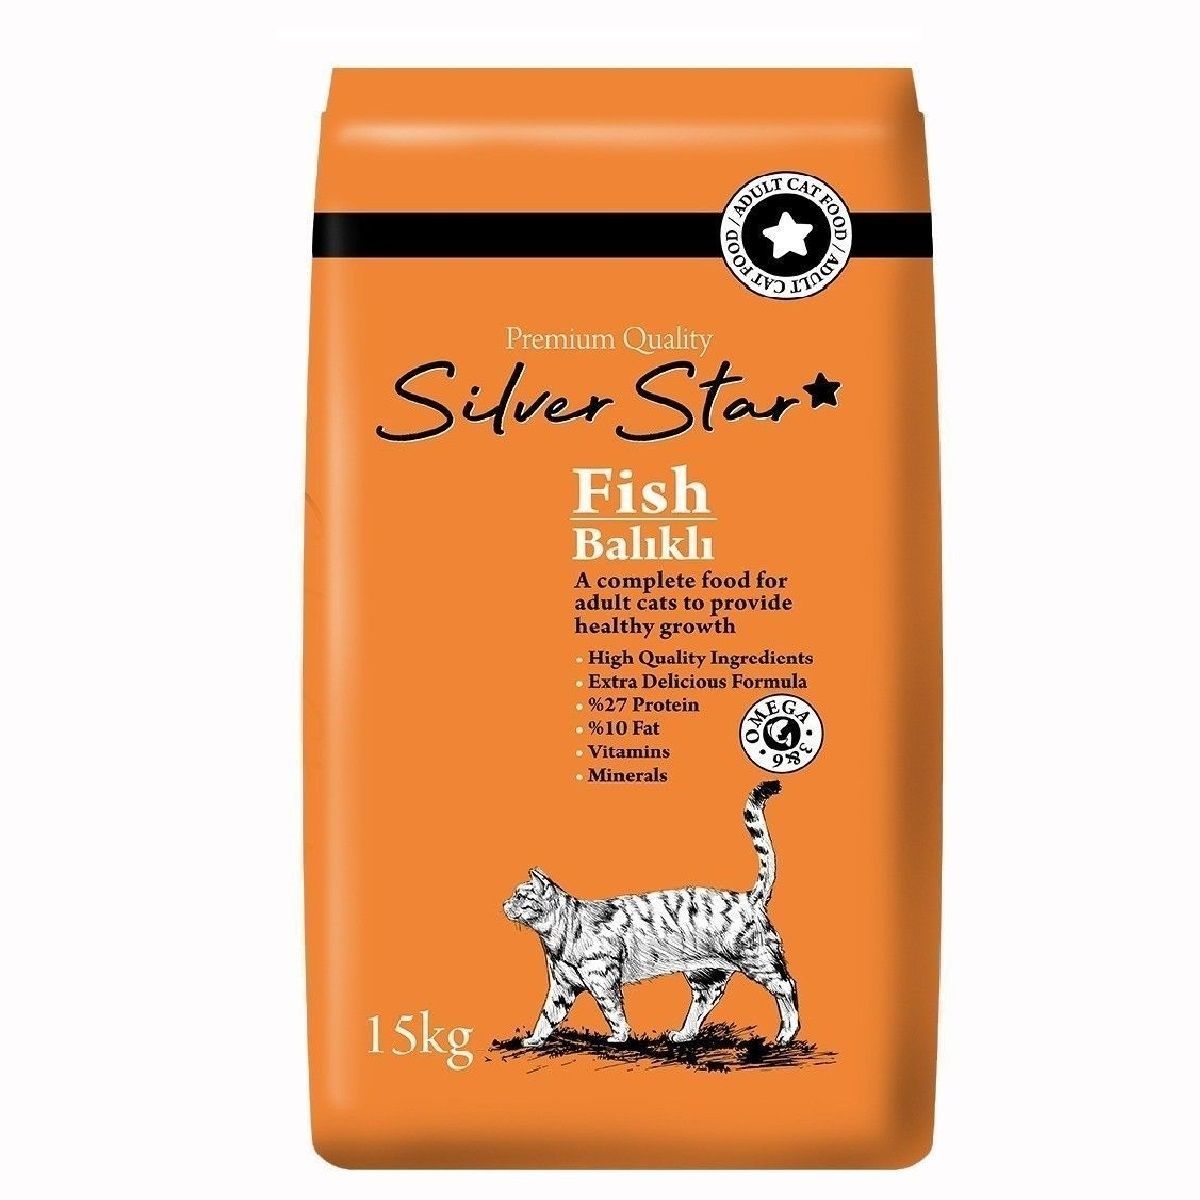 Yetişkin Kedi Mamaları | Silver Star Balıklı Yetişkin Kedi Maması 15 Kg | silverstarbalık | 